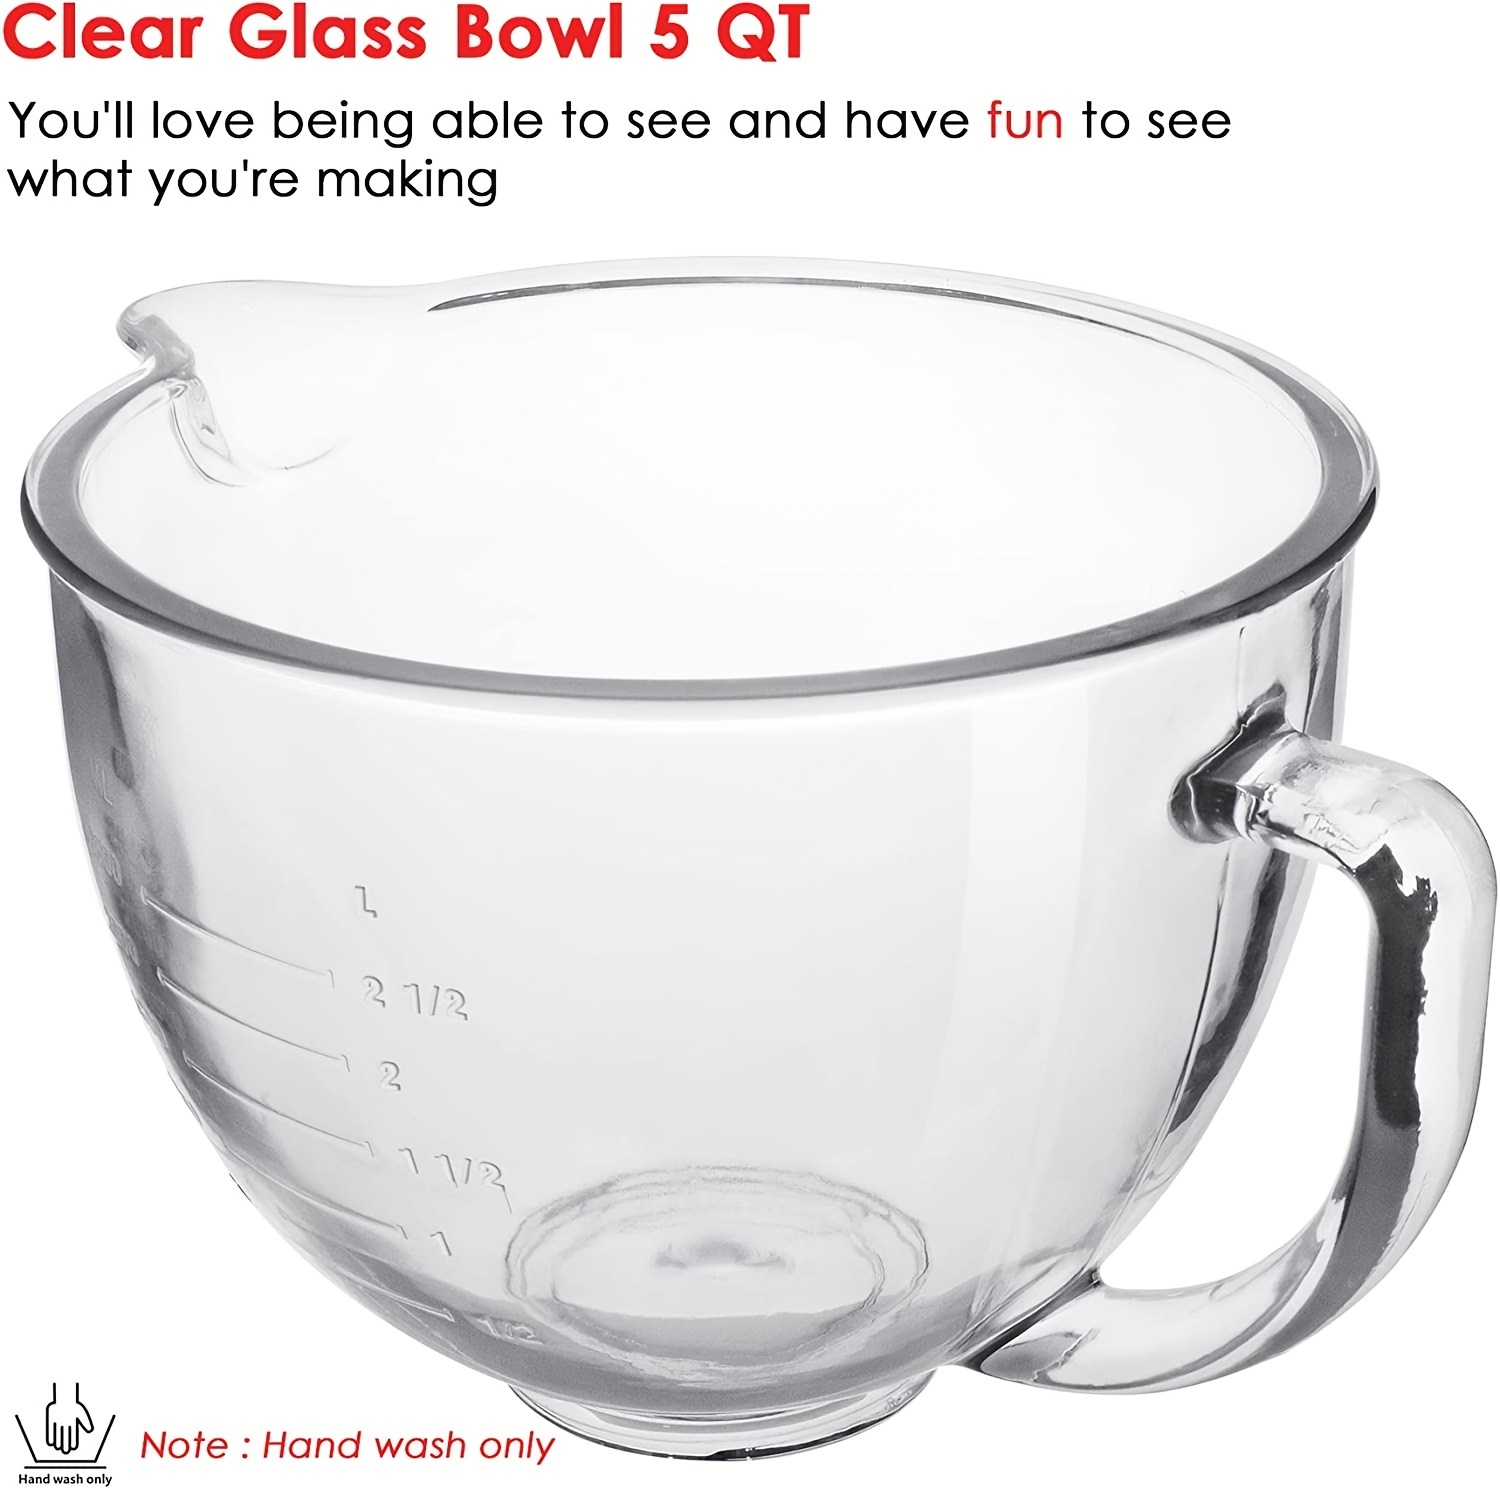 KitchenAid 5 Quart Tilt-Head Glass Bowl with Measurement Markings